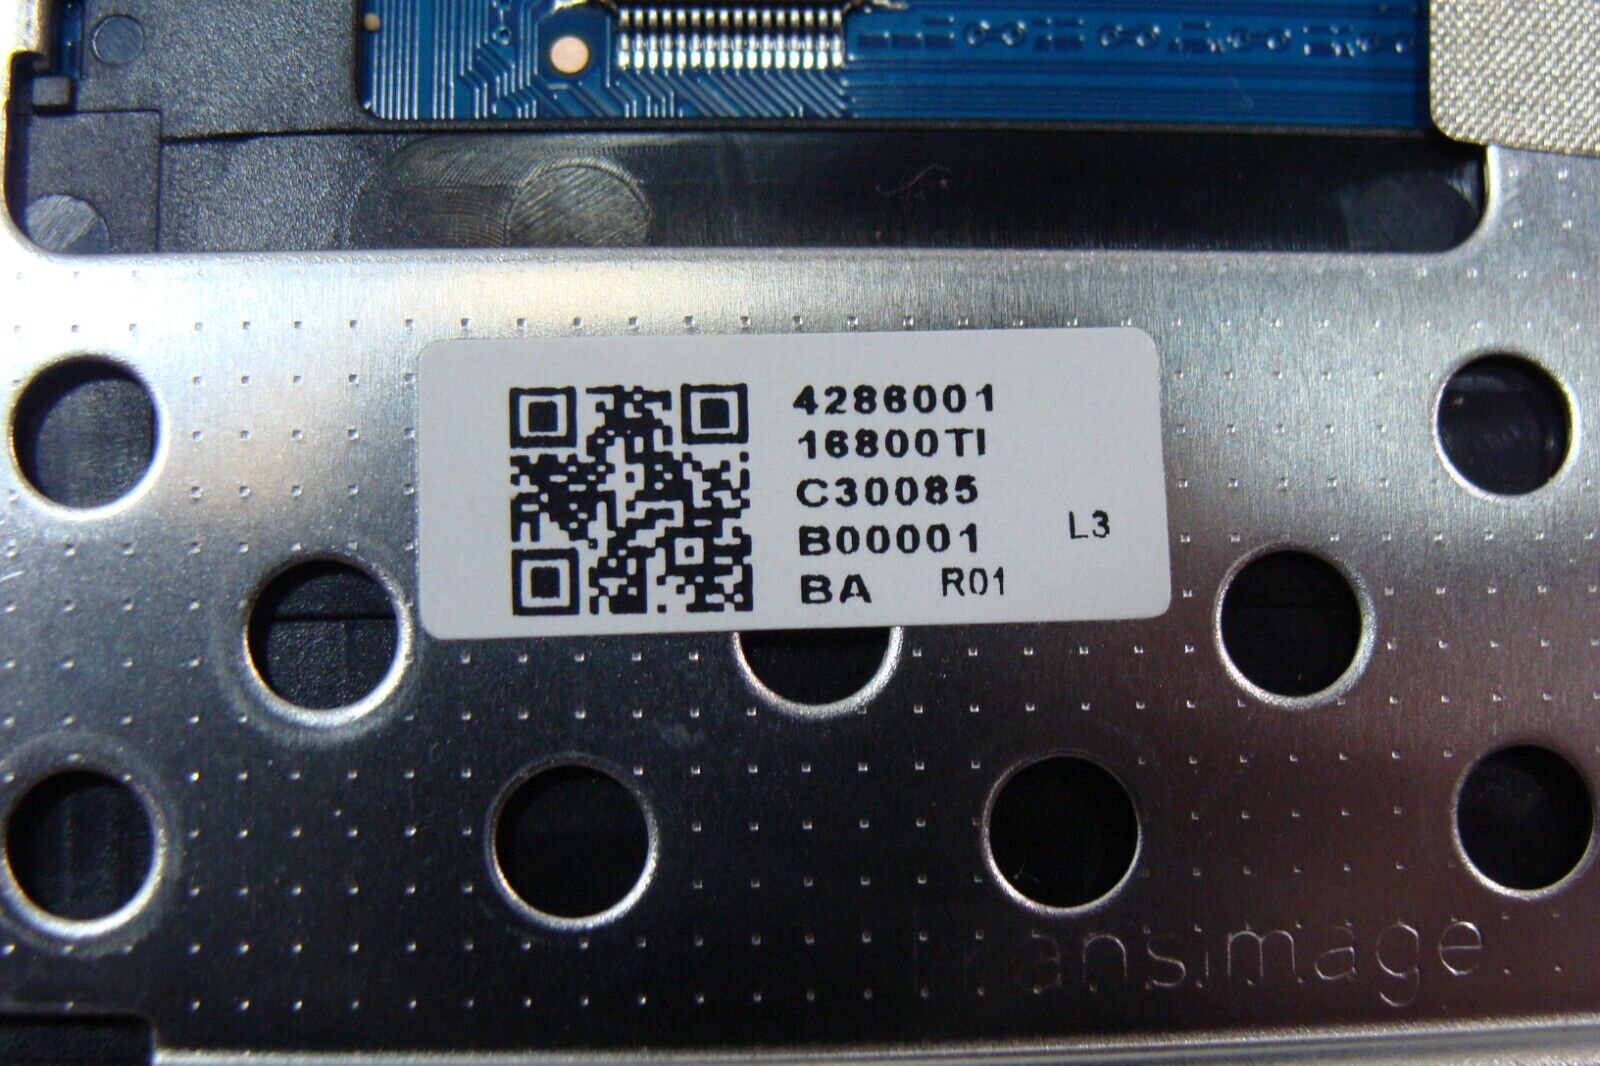 Lenovo IdeaPad 330S-15IKB 15.6